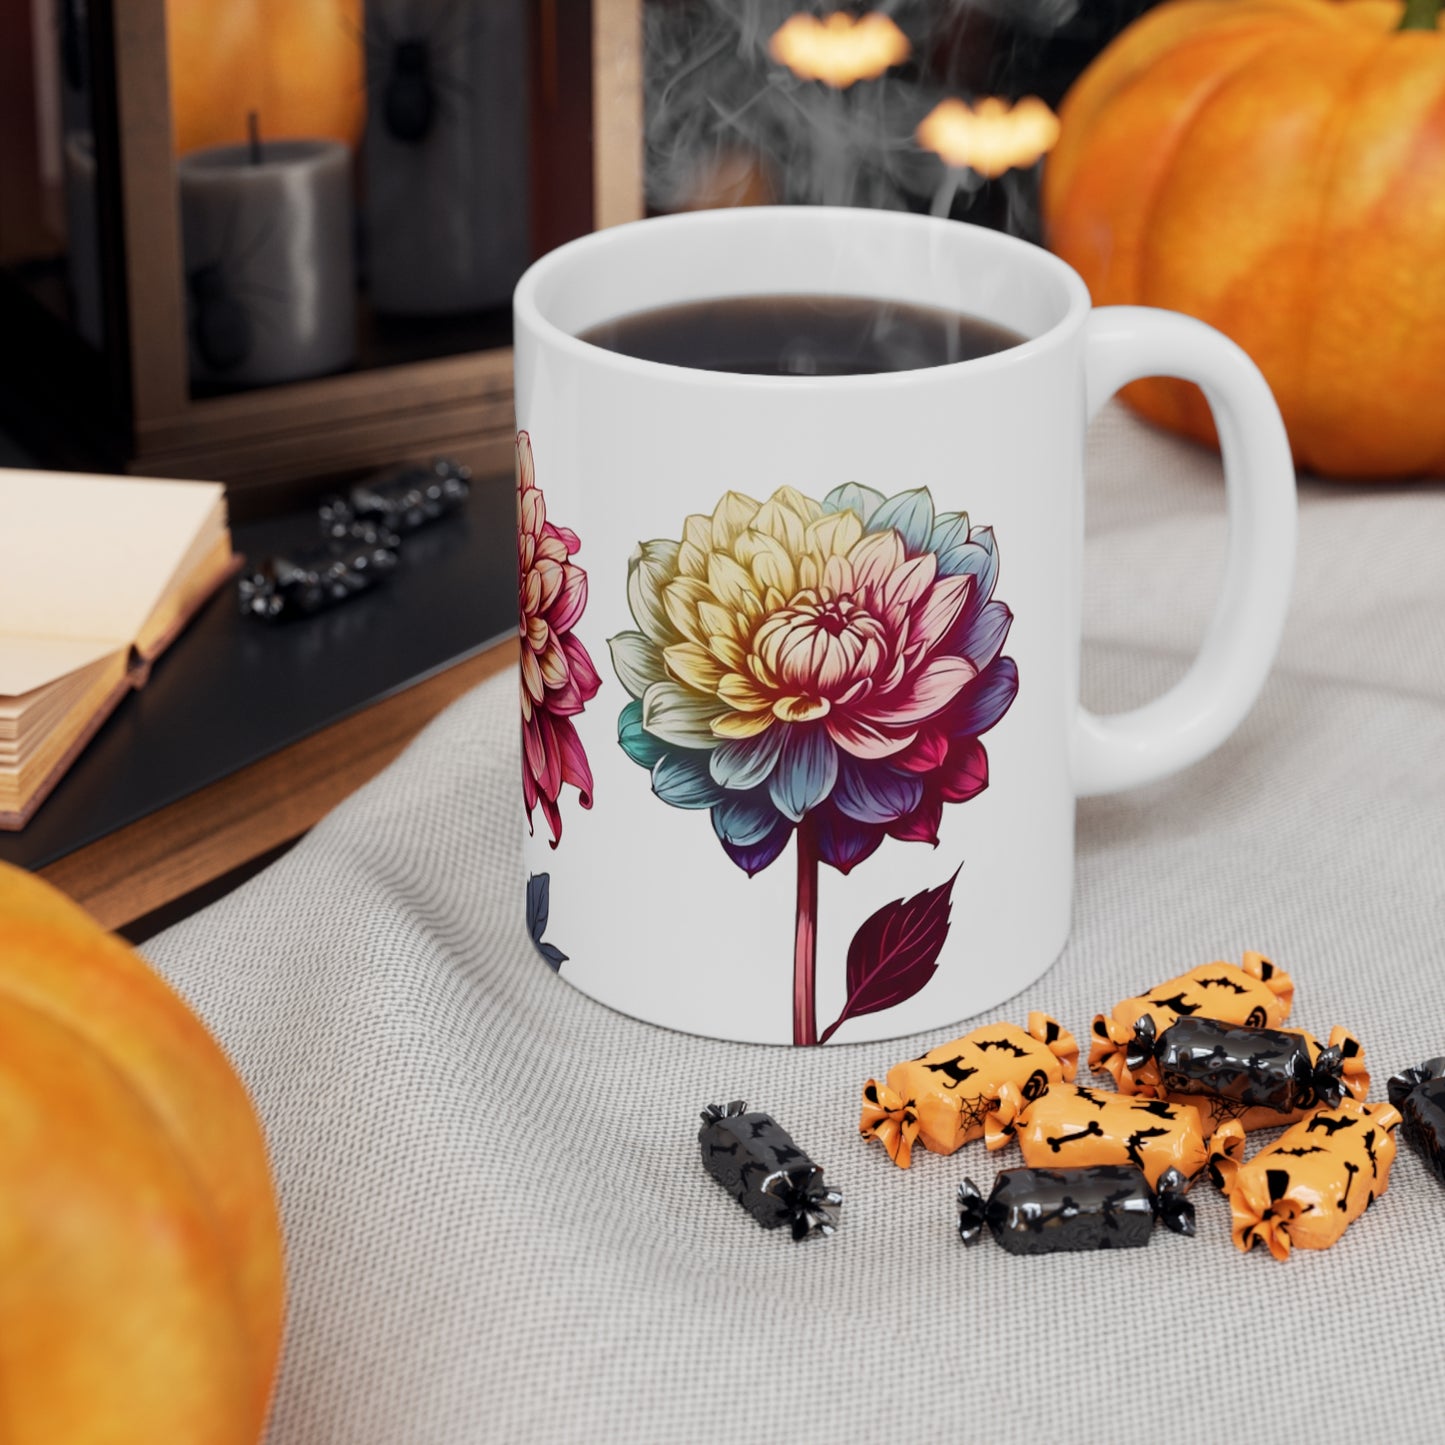 Colourful Dahlia Flowers Mug - Ceramic Coffee Mug 11oz